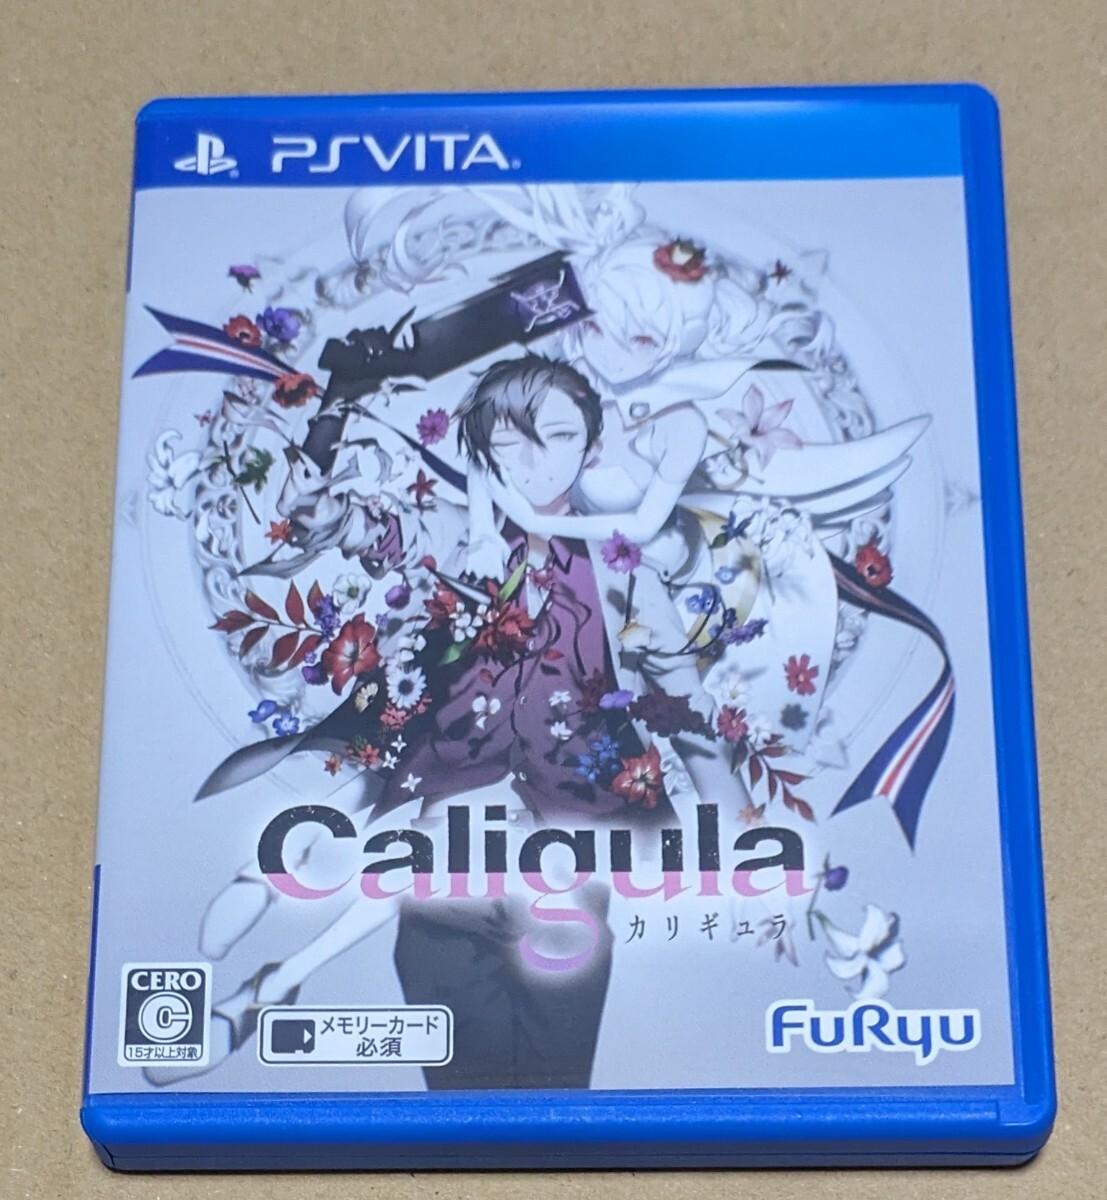 【ハガキ付き】【送料無料】【PSVita】 Caligula -カリギュラ-の画像1